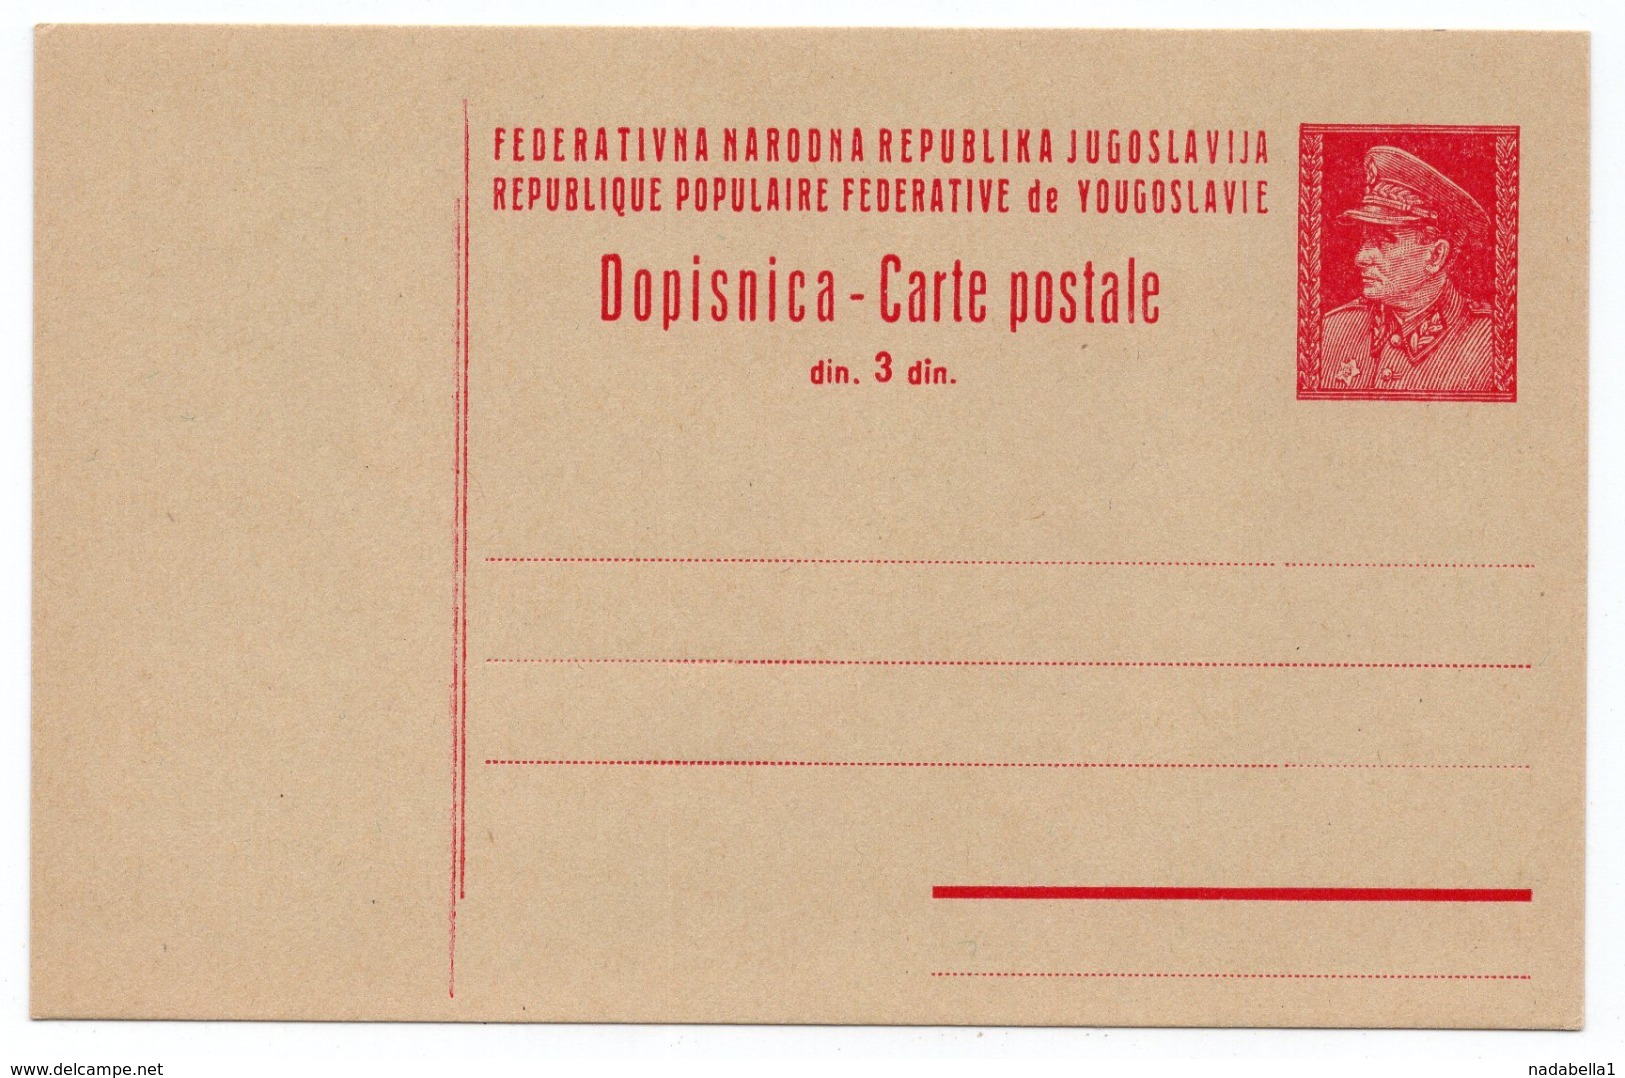 1947 FNR YUGOSLAVIA, CROATIA, TITO, 3 DINARA, LATIN TEXT, STATIONERY CARD, MINT - Postal Stationery